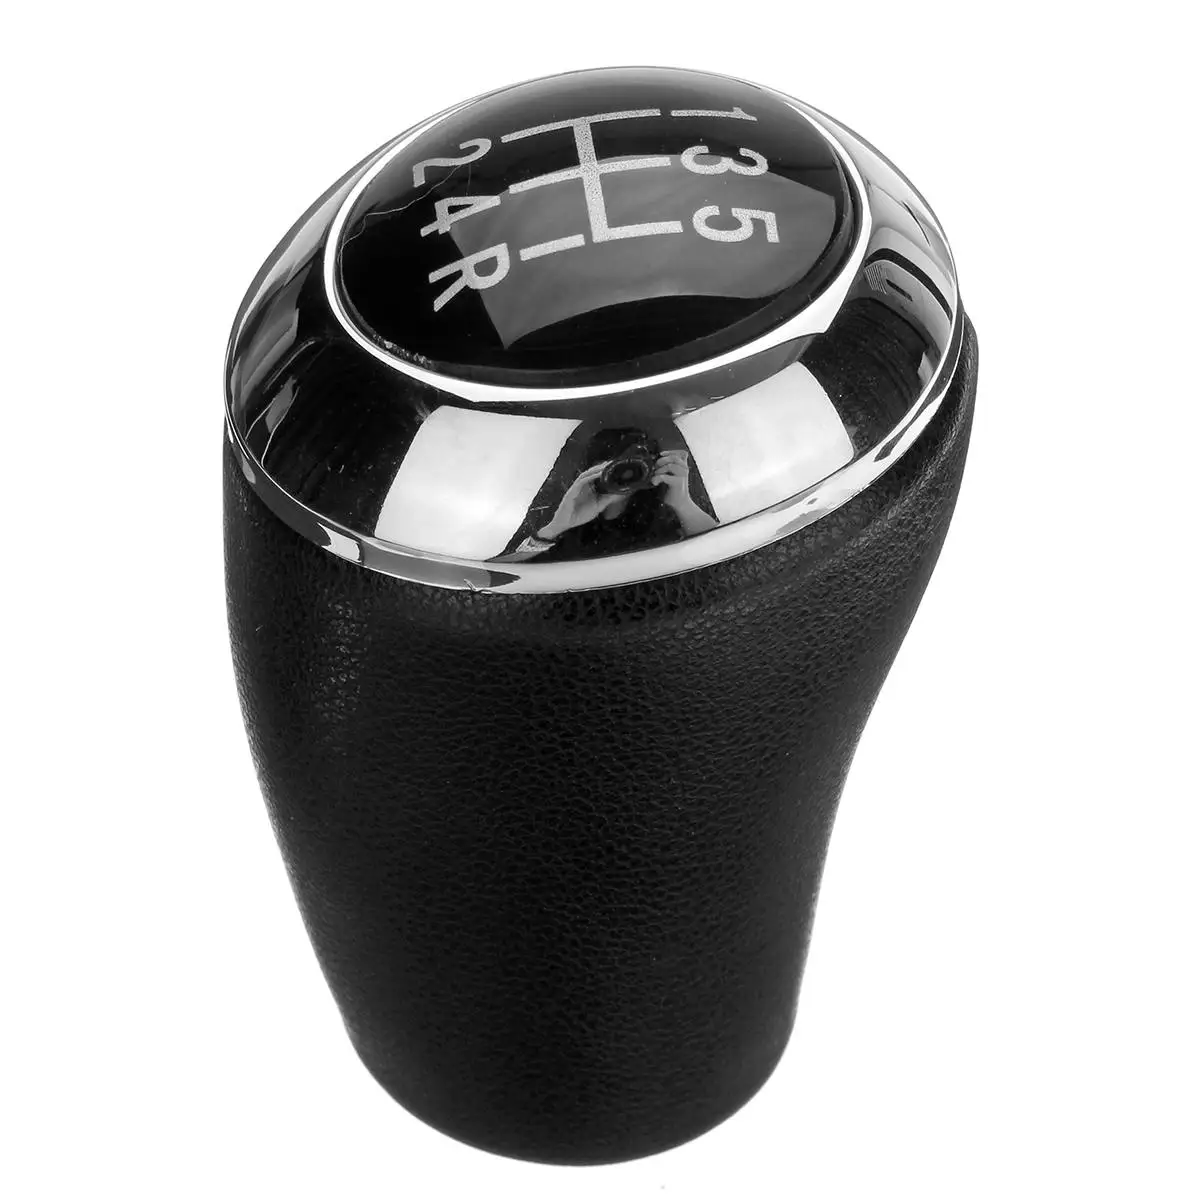 Черный 5 Скорость Автомобильная запчасть руководство Шестерни Цельнокройное кнопка с фиксацией рычаги передач для автомобиля из искусственной кожи для Mazda 3 5 6